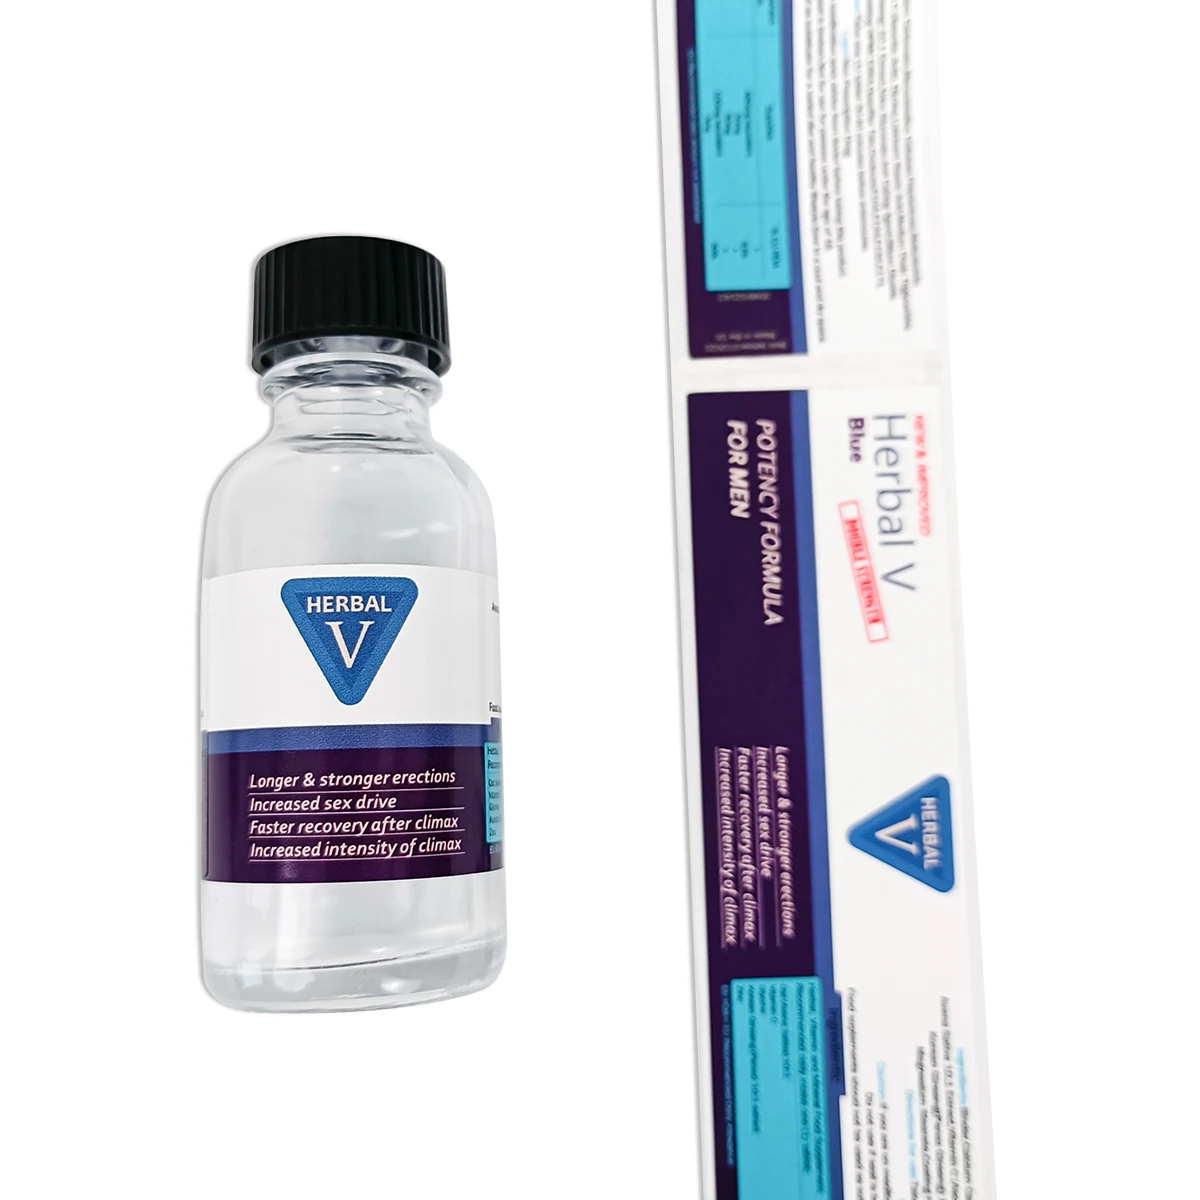 Custom Printed Waterproof Adhesive Vinyl Label Sticker Vitamin Supplement Product Medicine Vial Bottle Logo Packaging Vitamins